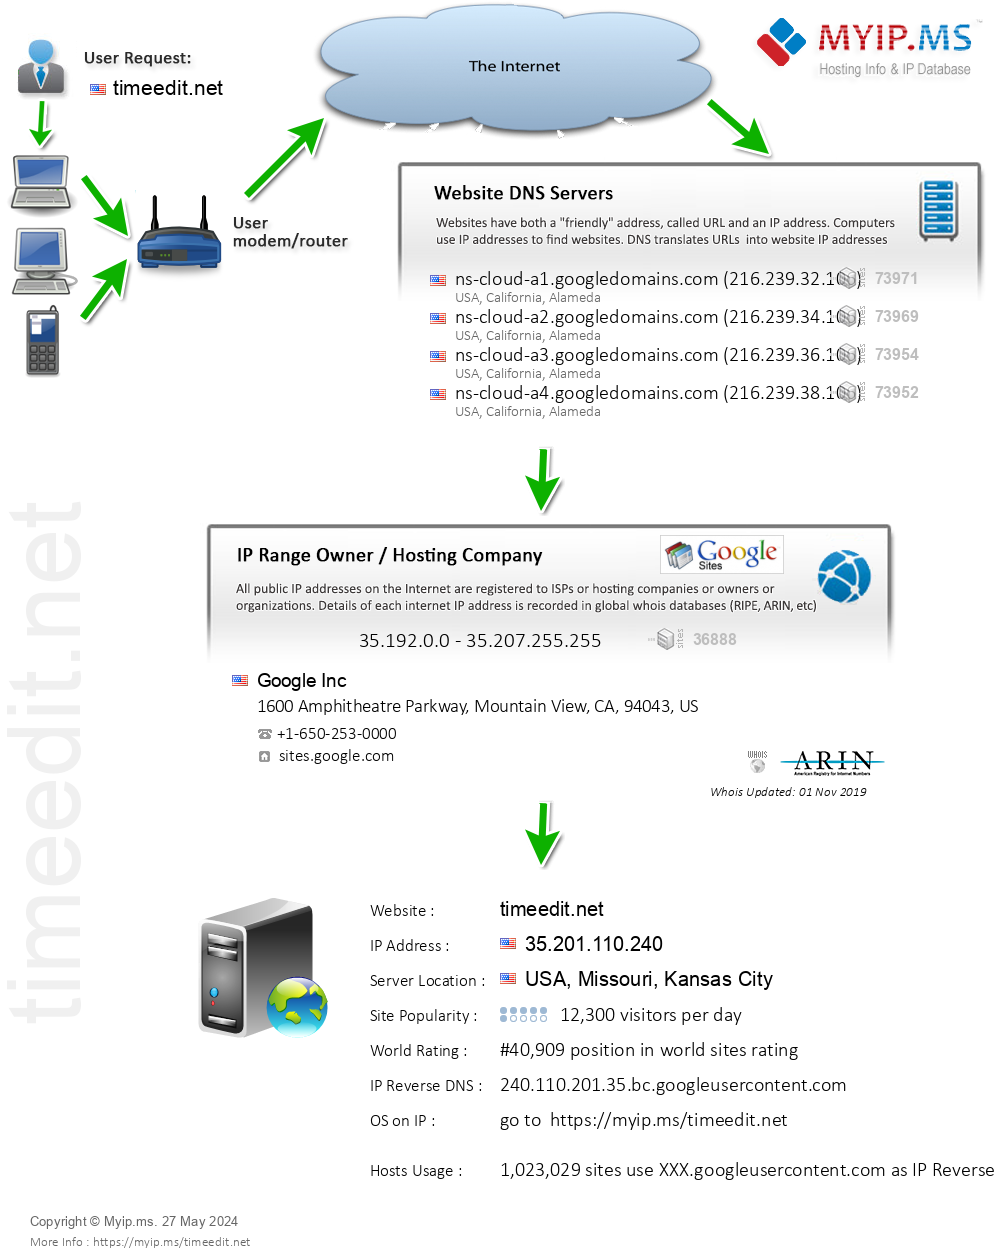 Timeedit.net - Website Hosting Visual IP Diagram